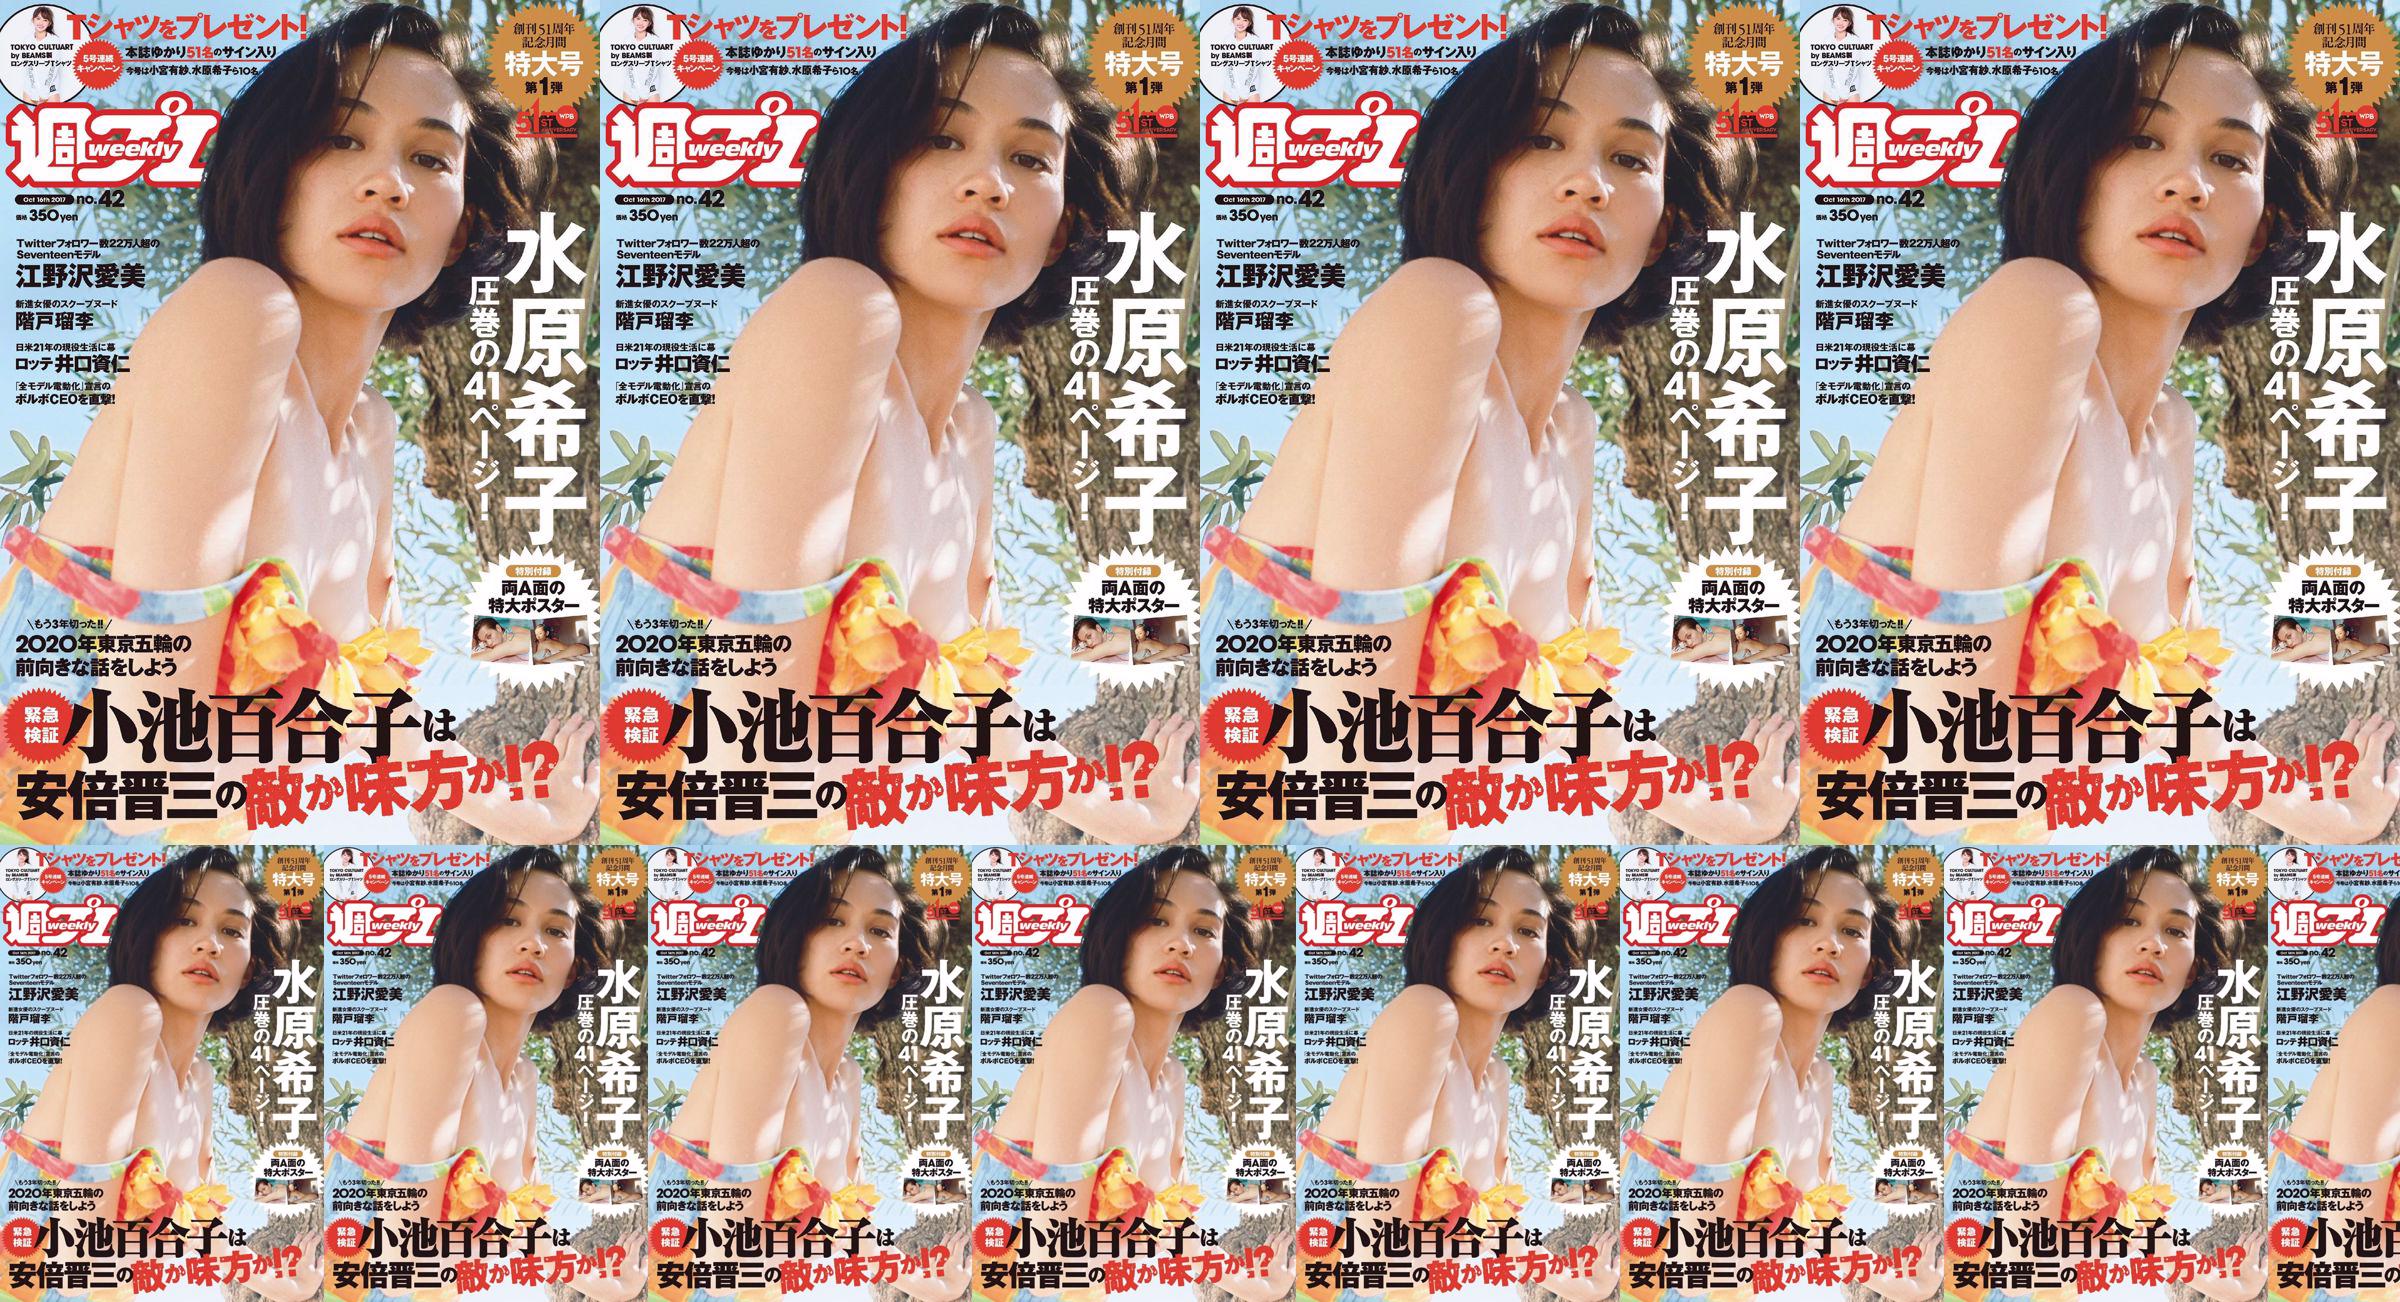 Kiko Mizuhara Manami Enosawa Serina Fukui Miu Nakamura Ruri Shinato [Playboy semanal] 2017 No.42 Photo Magazine No.0600e4 Página 4